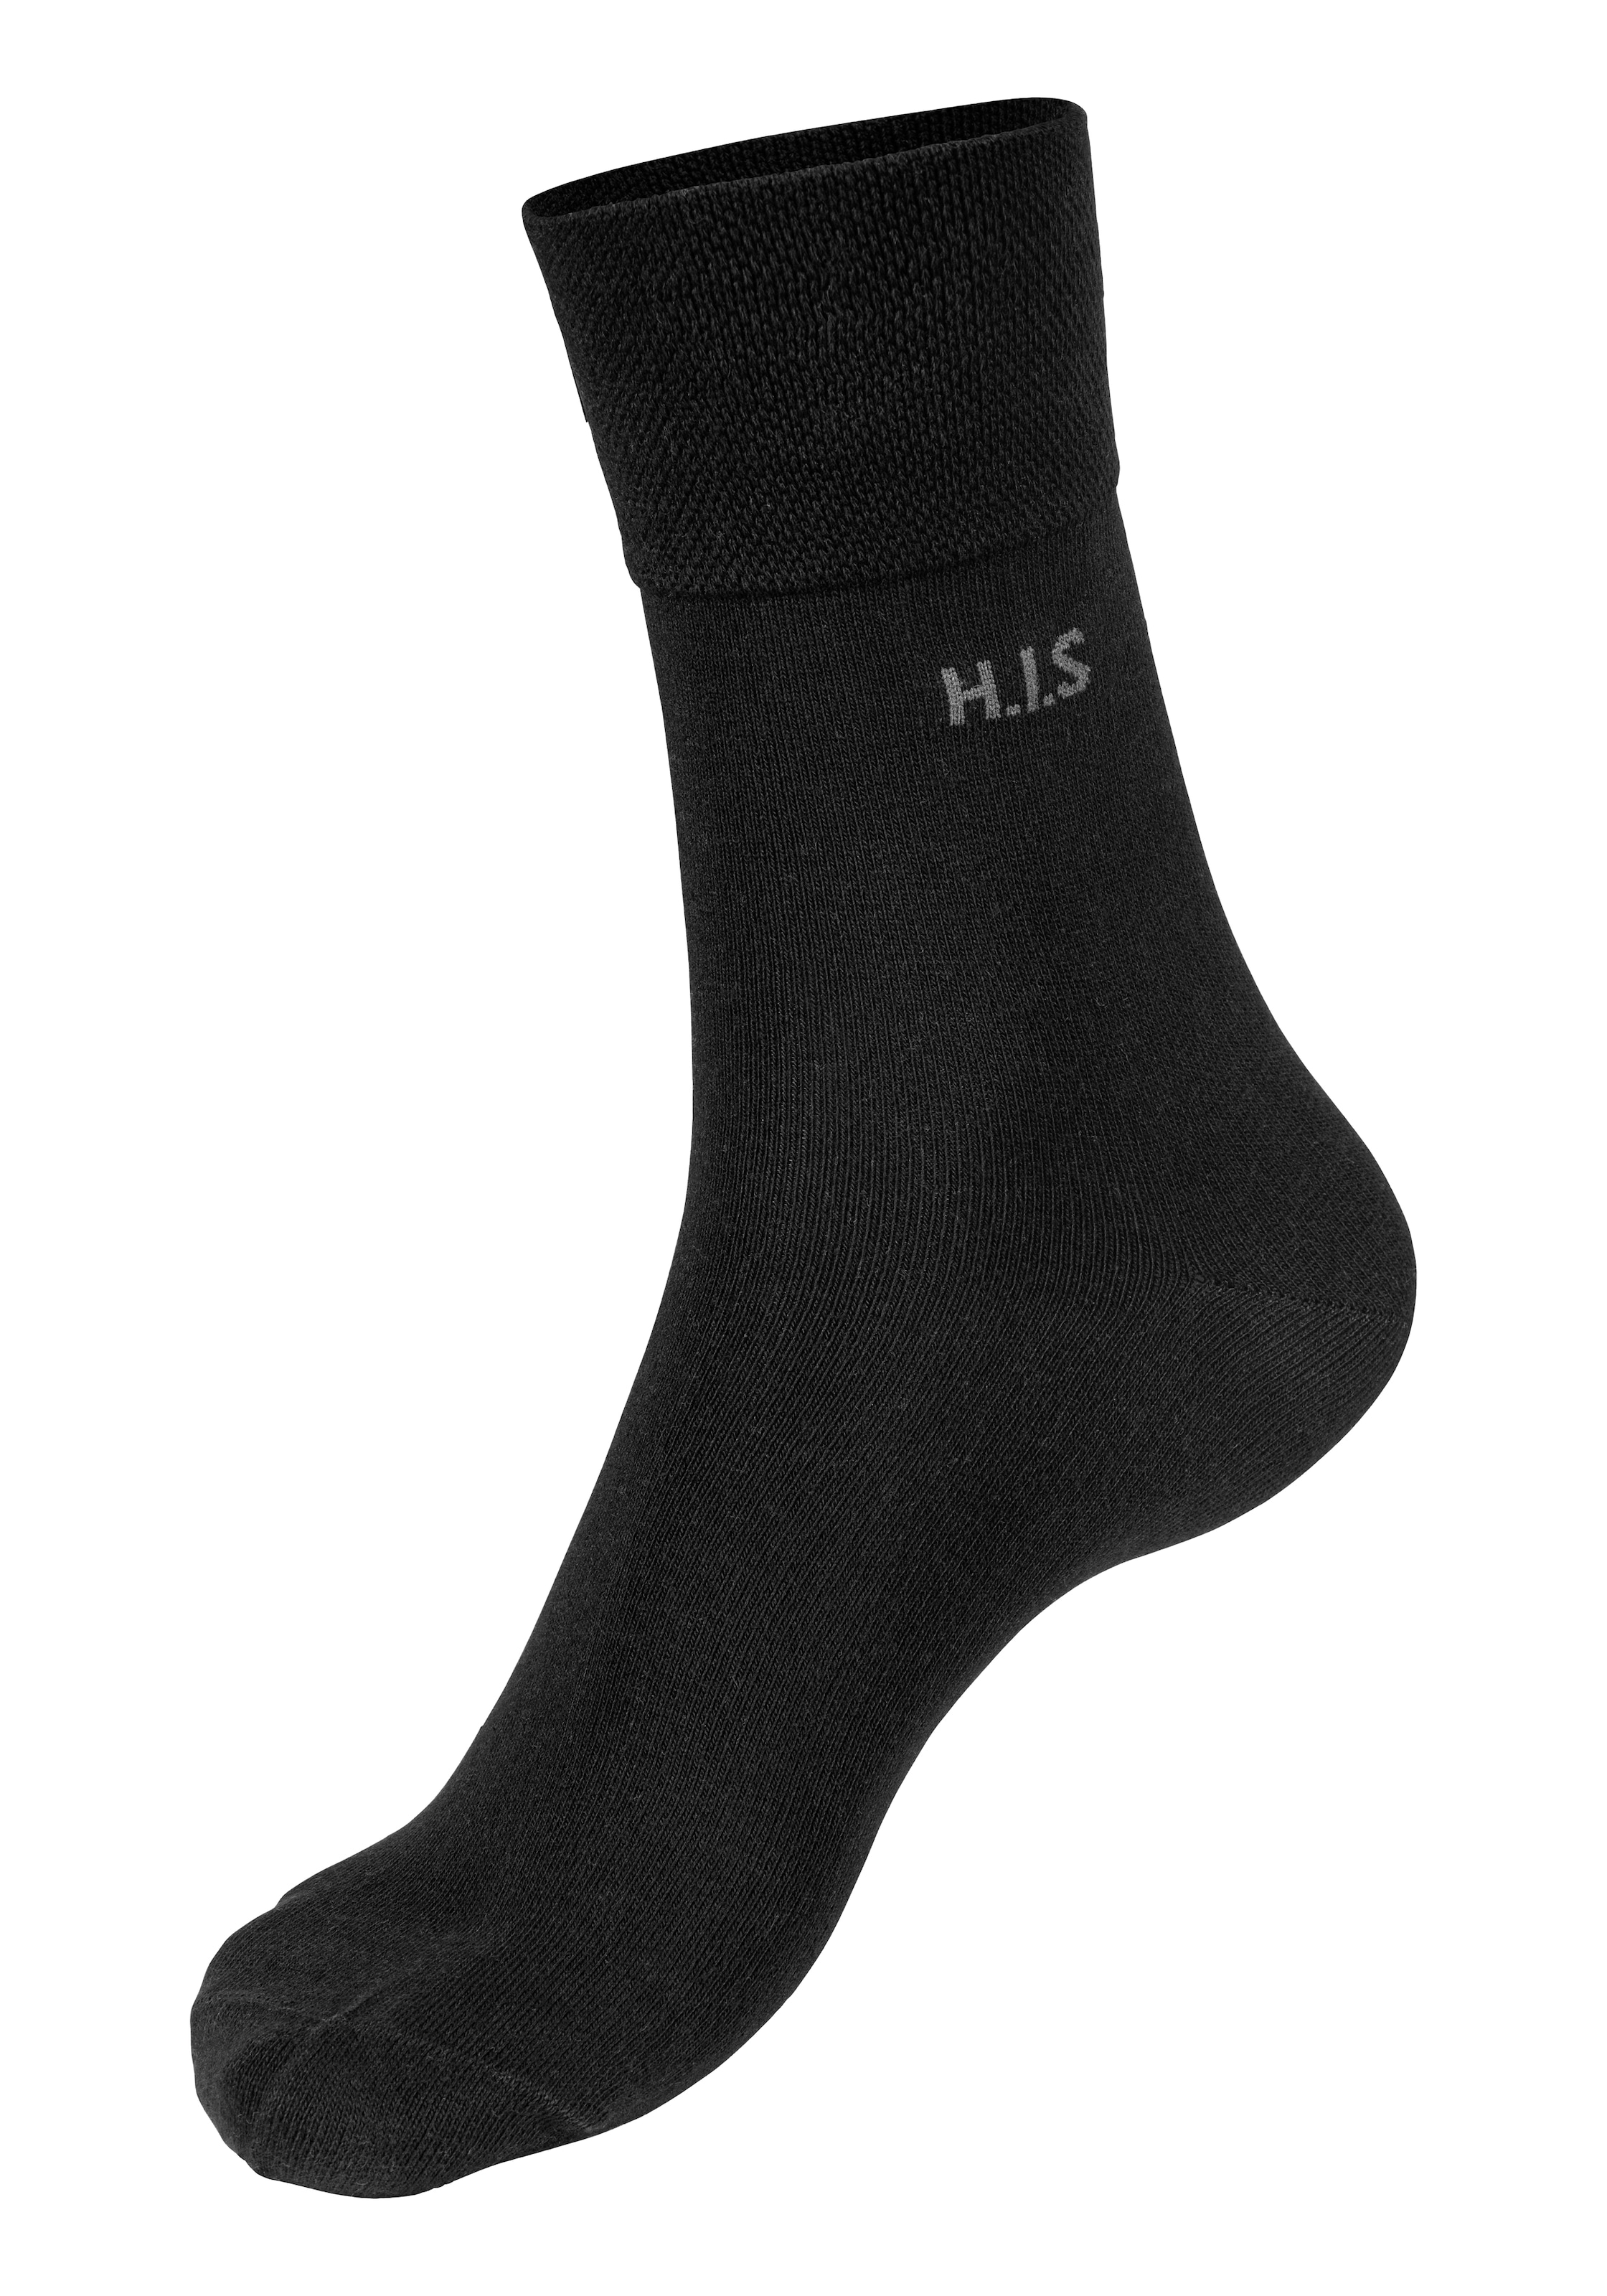 Gummi 12 kaufen Paar), einschneidendes Socken, online ohne (Packung, H.I.S